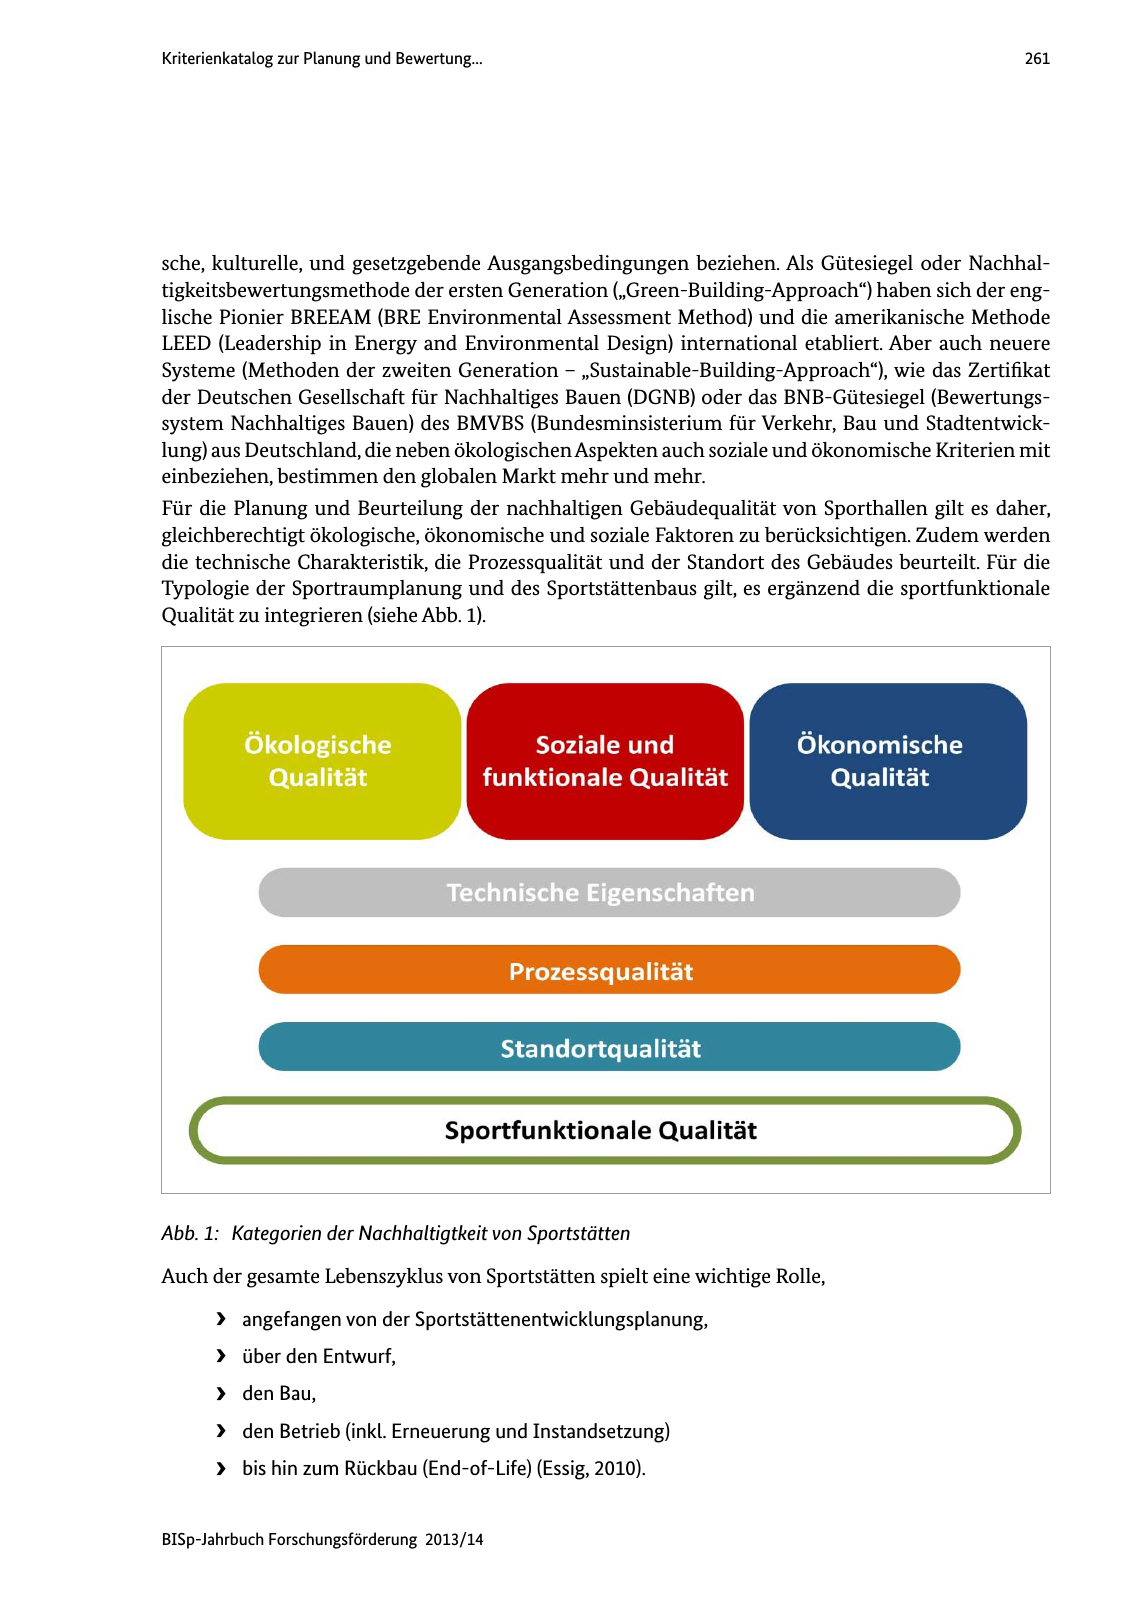 Vorschau BISp-Jahrbuch Forschungsförderung 2013/14 Seite 262